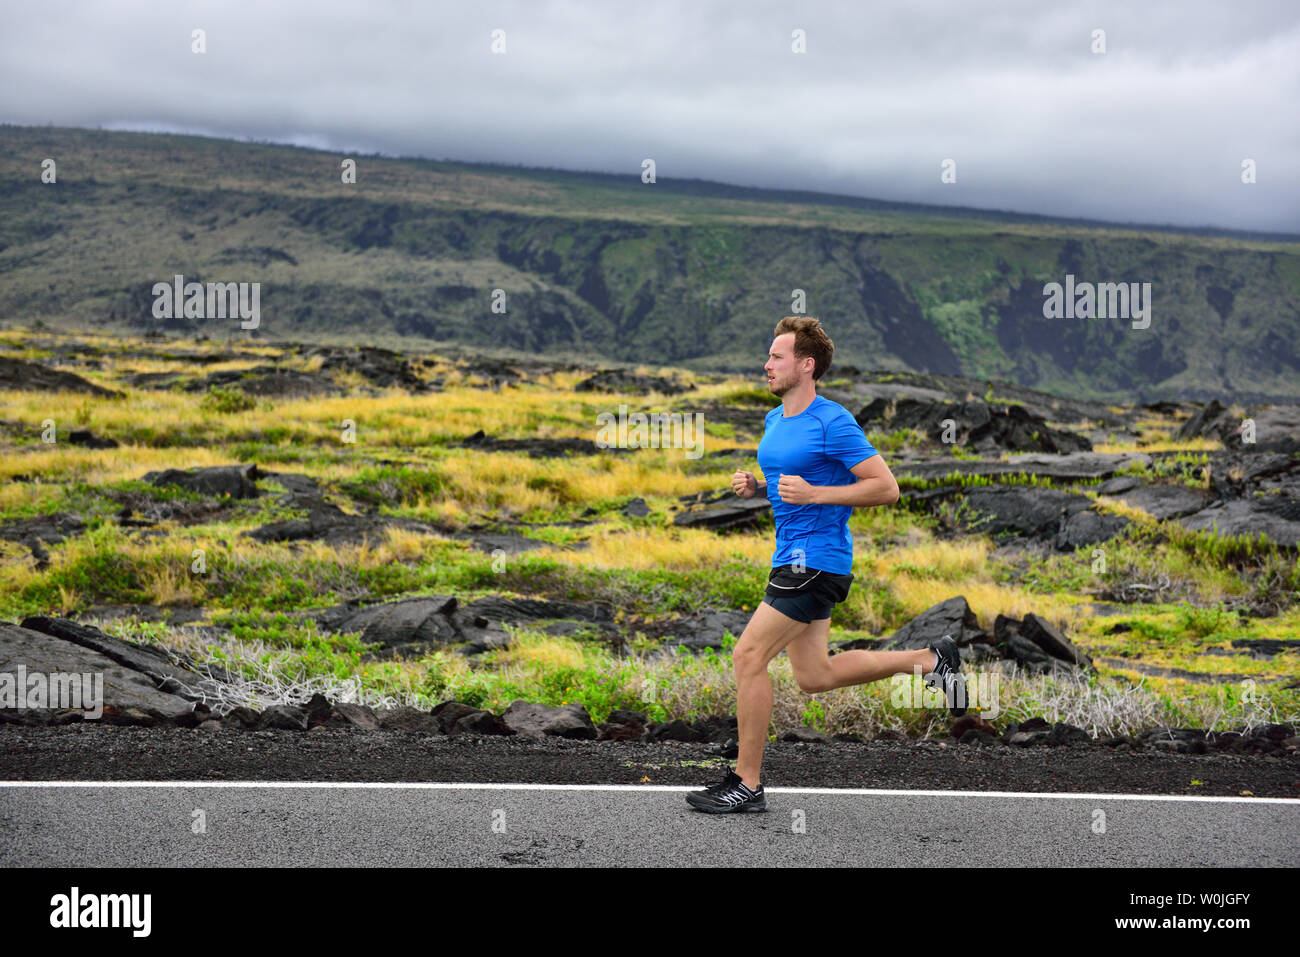 Homme sportif runner s'exécutant sur route de montagne. Running Man jogging cardio formation rapide pour le marathon sur chemin de campagne dans la nature, paysage d'arrière-plan le volcan. Les jeunes adultes de race blanche dans son 20s. Banque D'Images